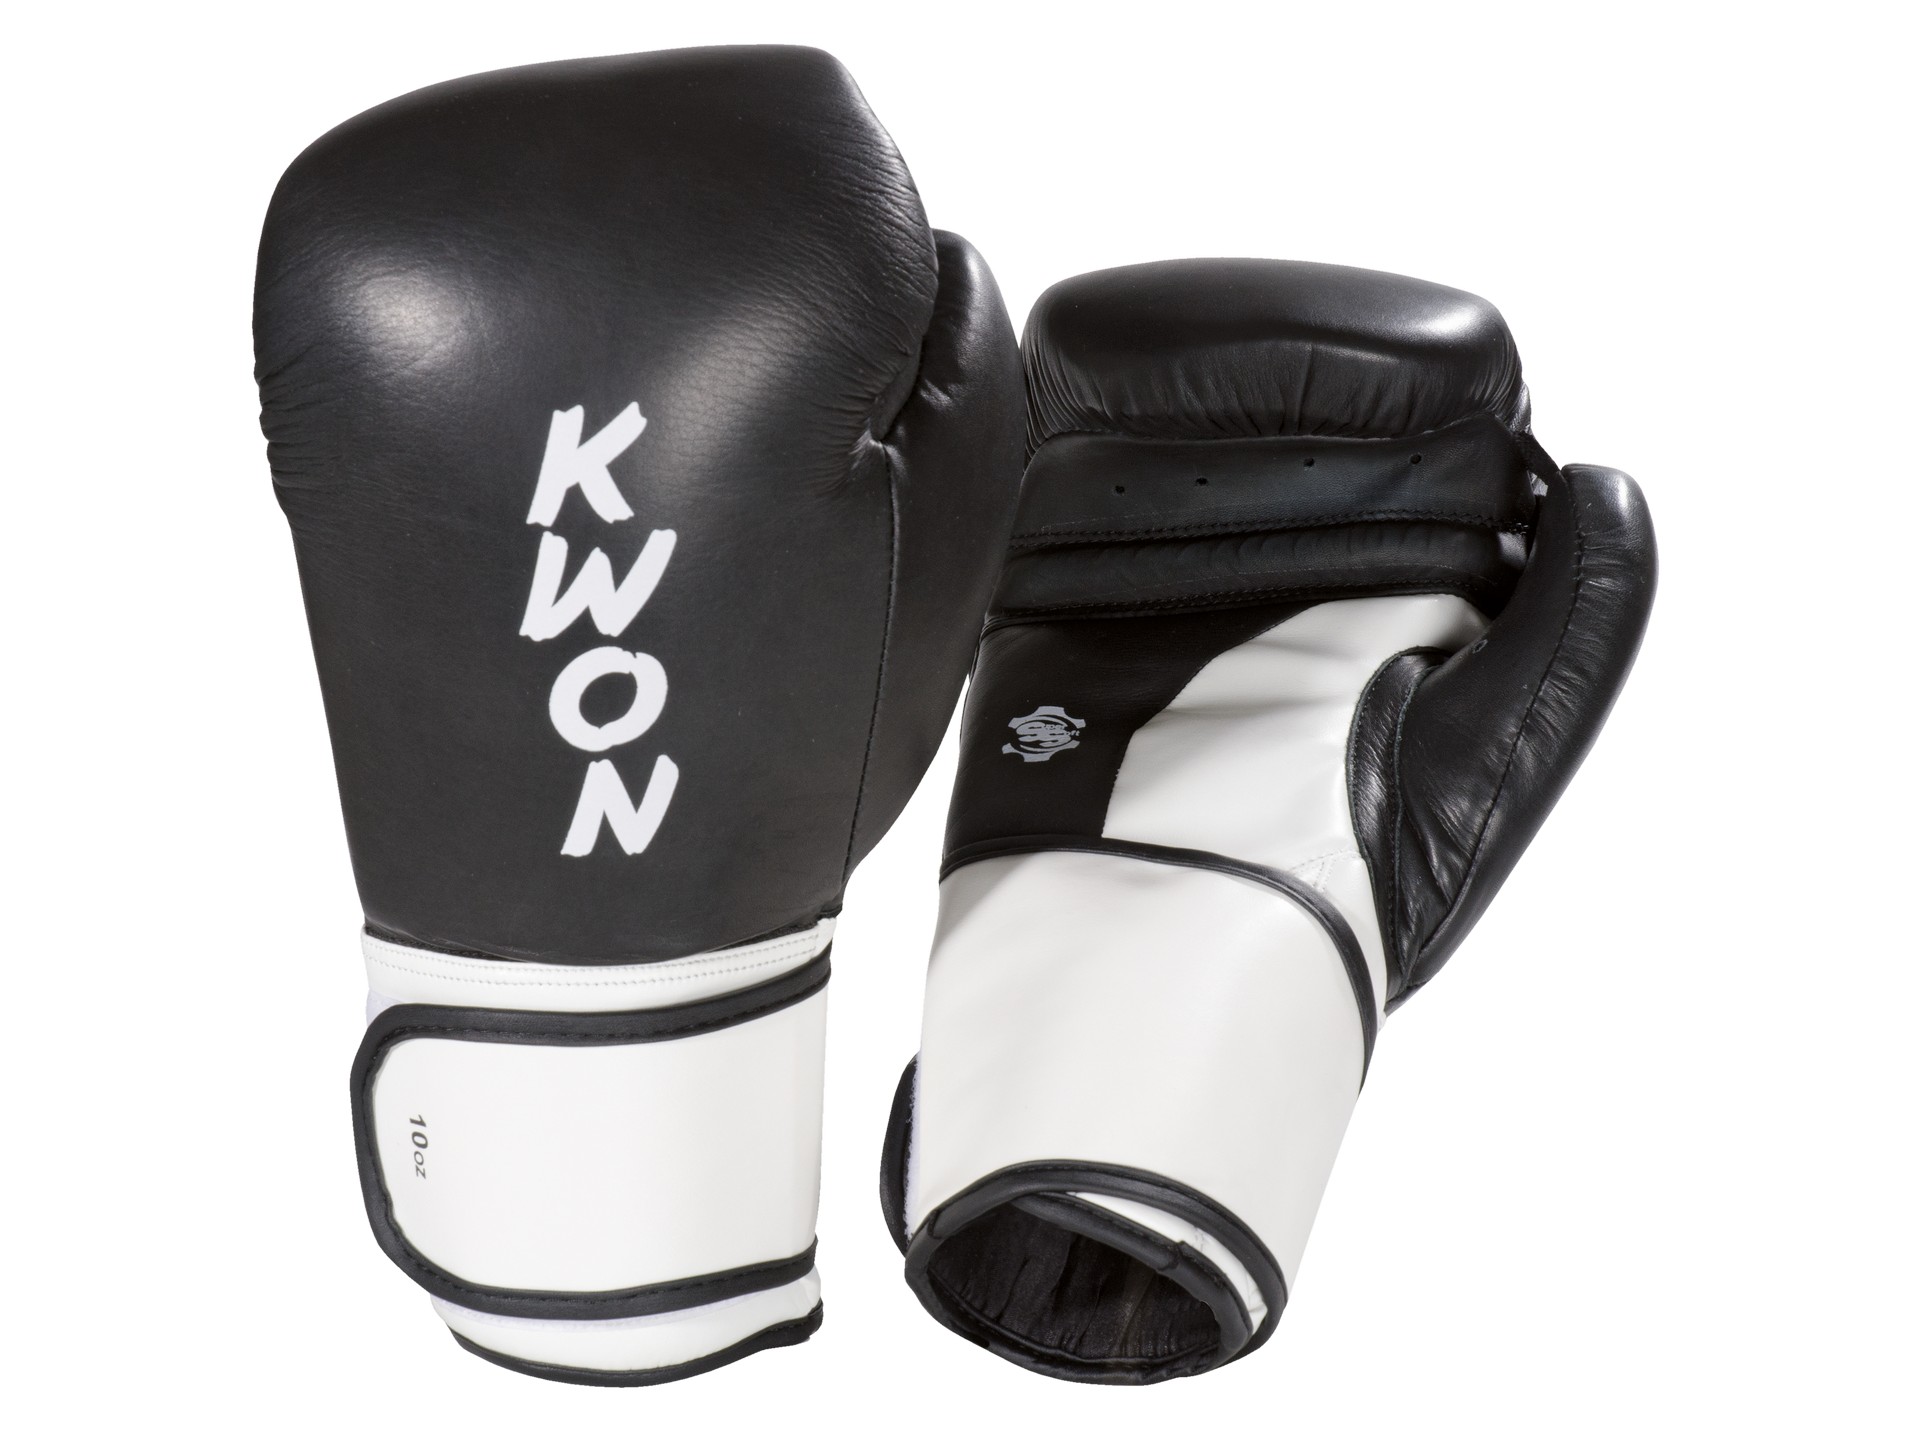 anerkannt - Super Boxen Boxhandschuhe | Champ Wettkampfhandschuhe KWON Kickboxen WKU Thai |